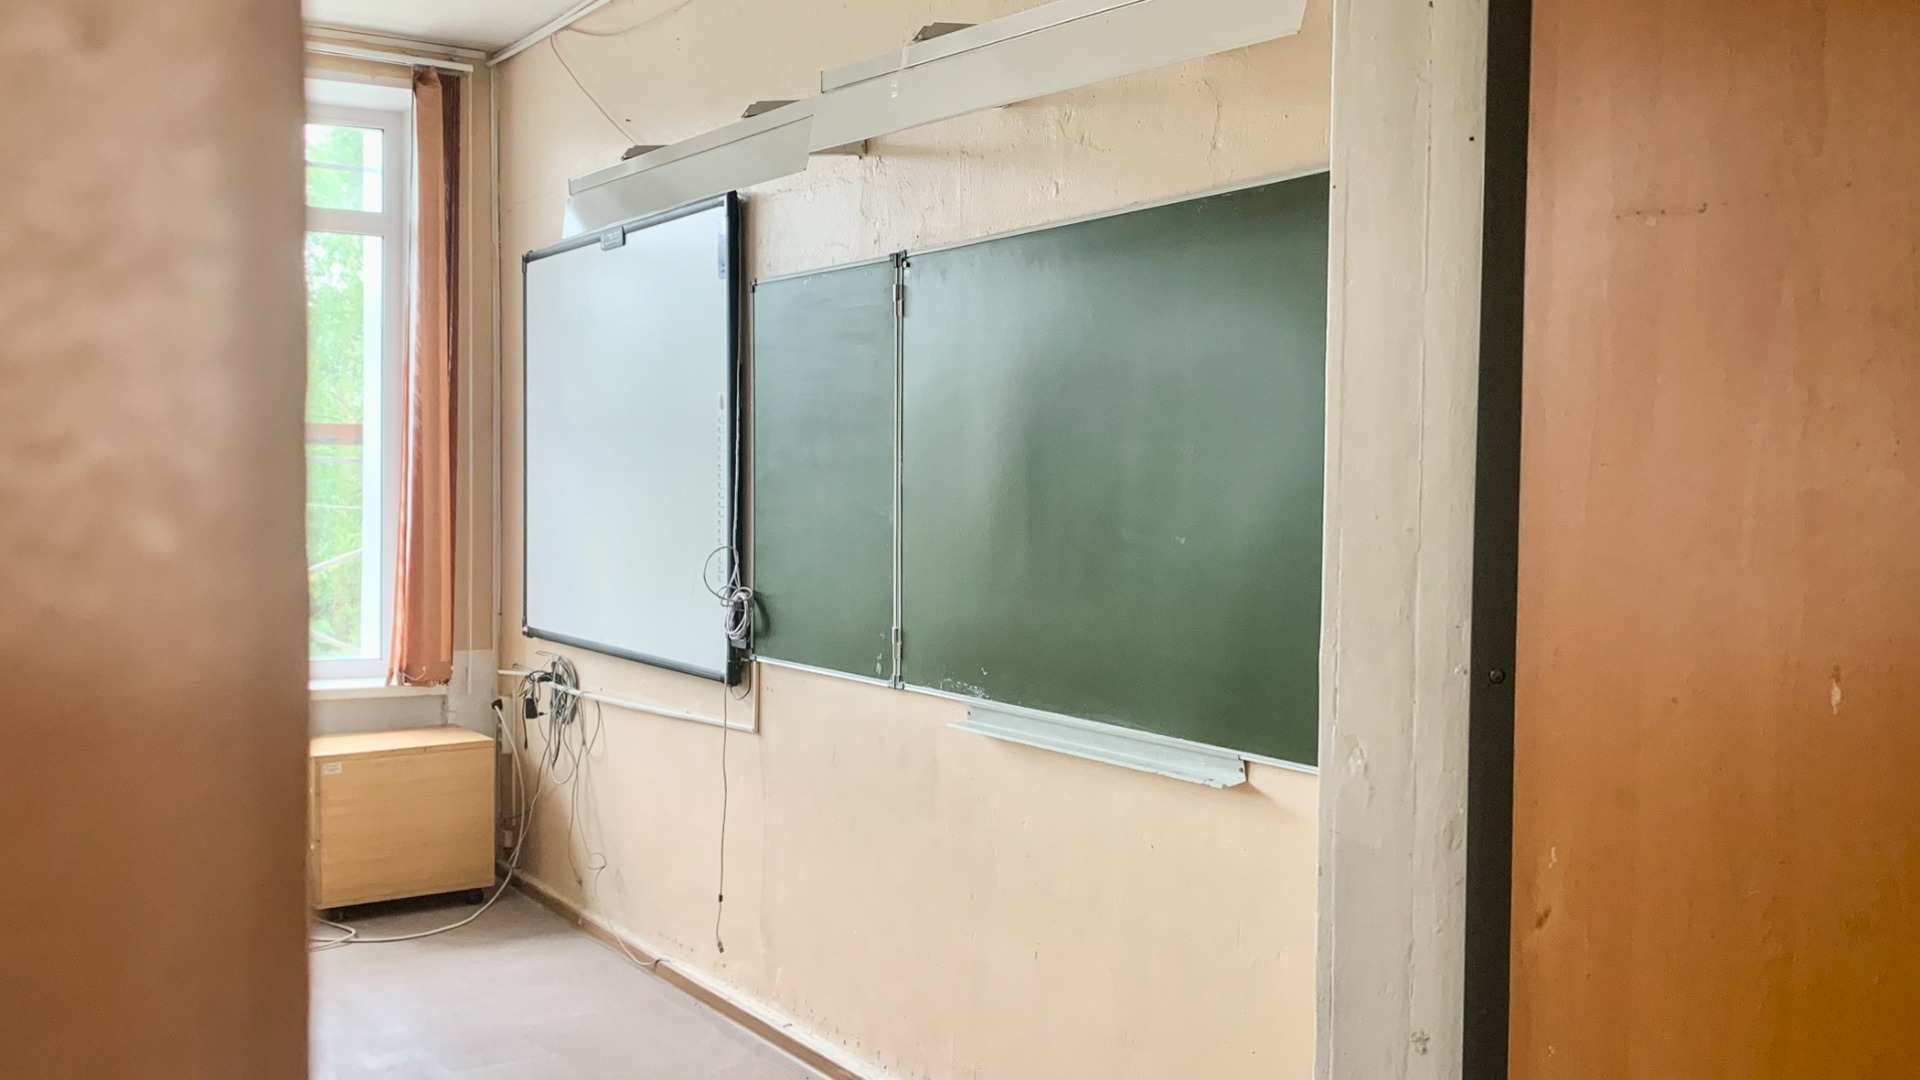 Решение о формате обучения белгородских школьников примут в конце июля